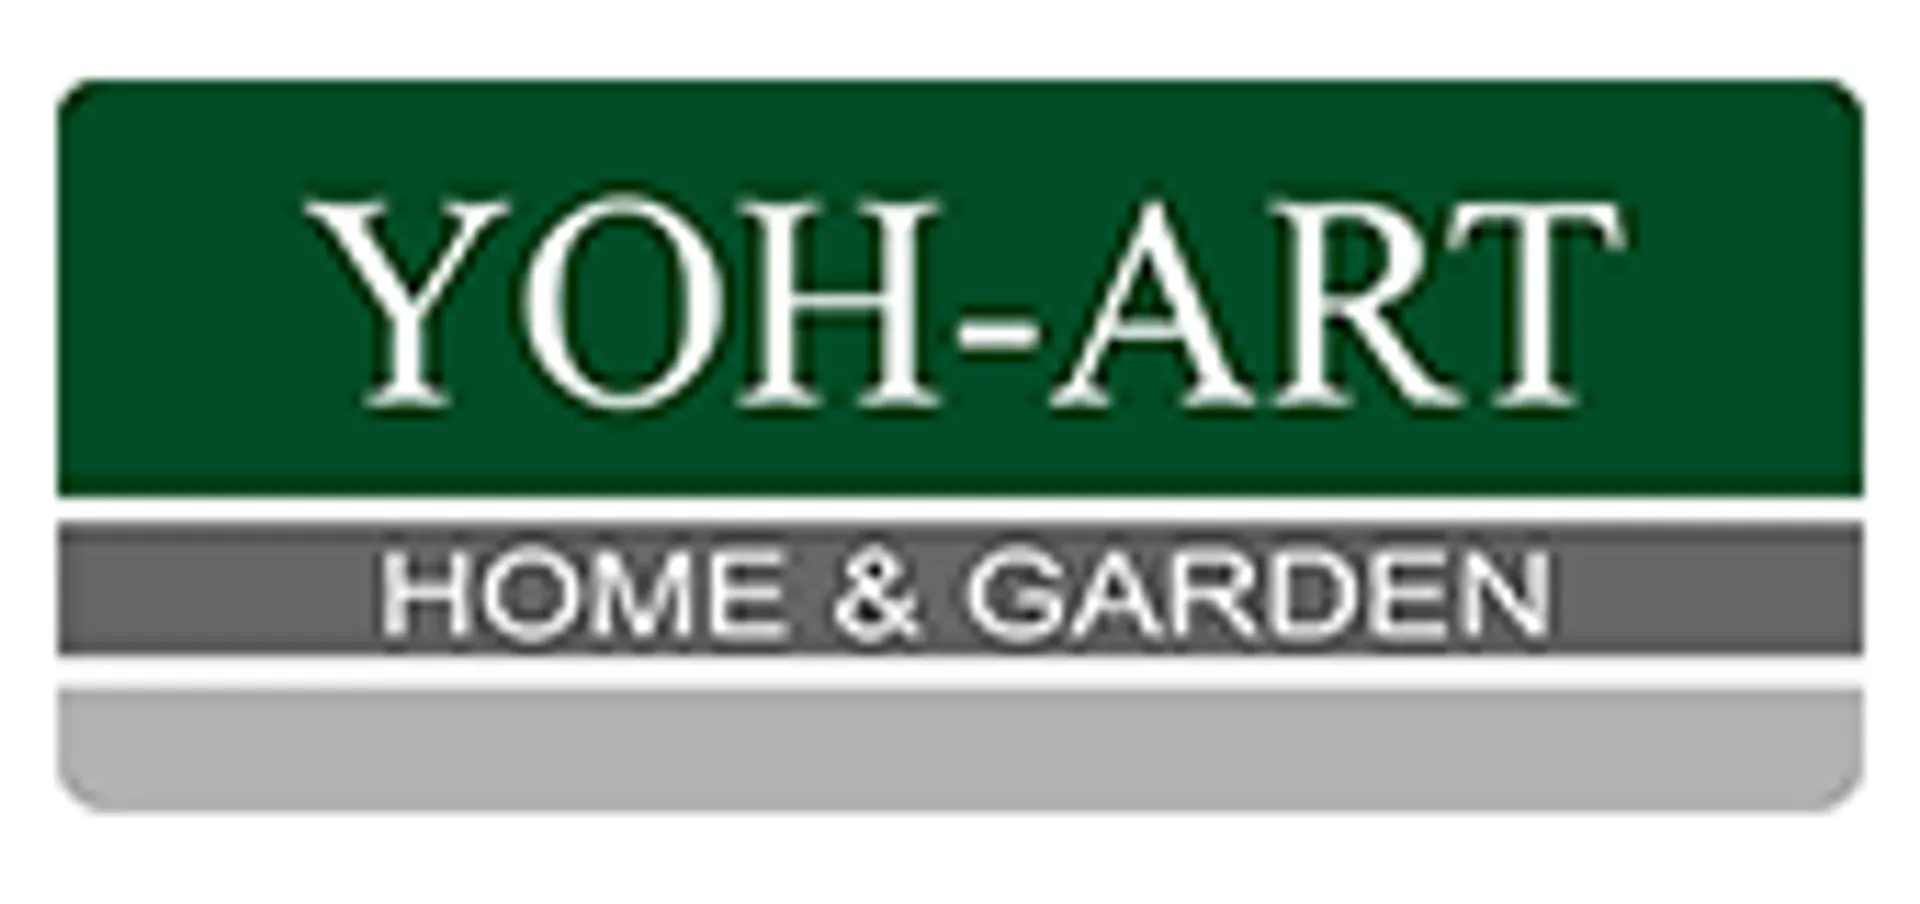 YOH-ART HOME & GARDEN logo